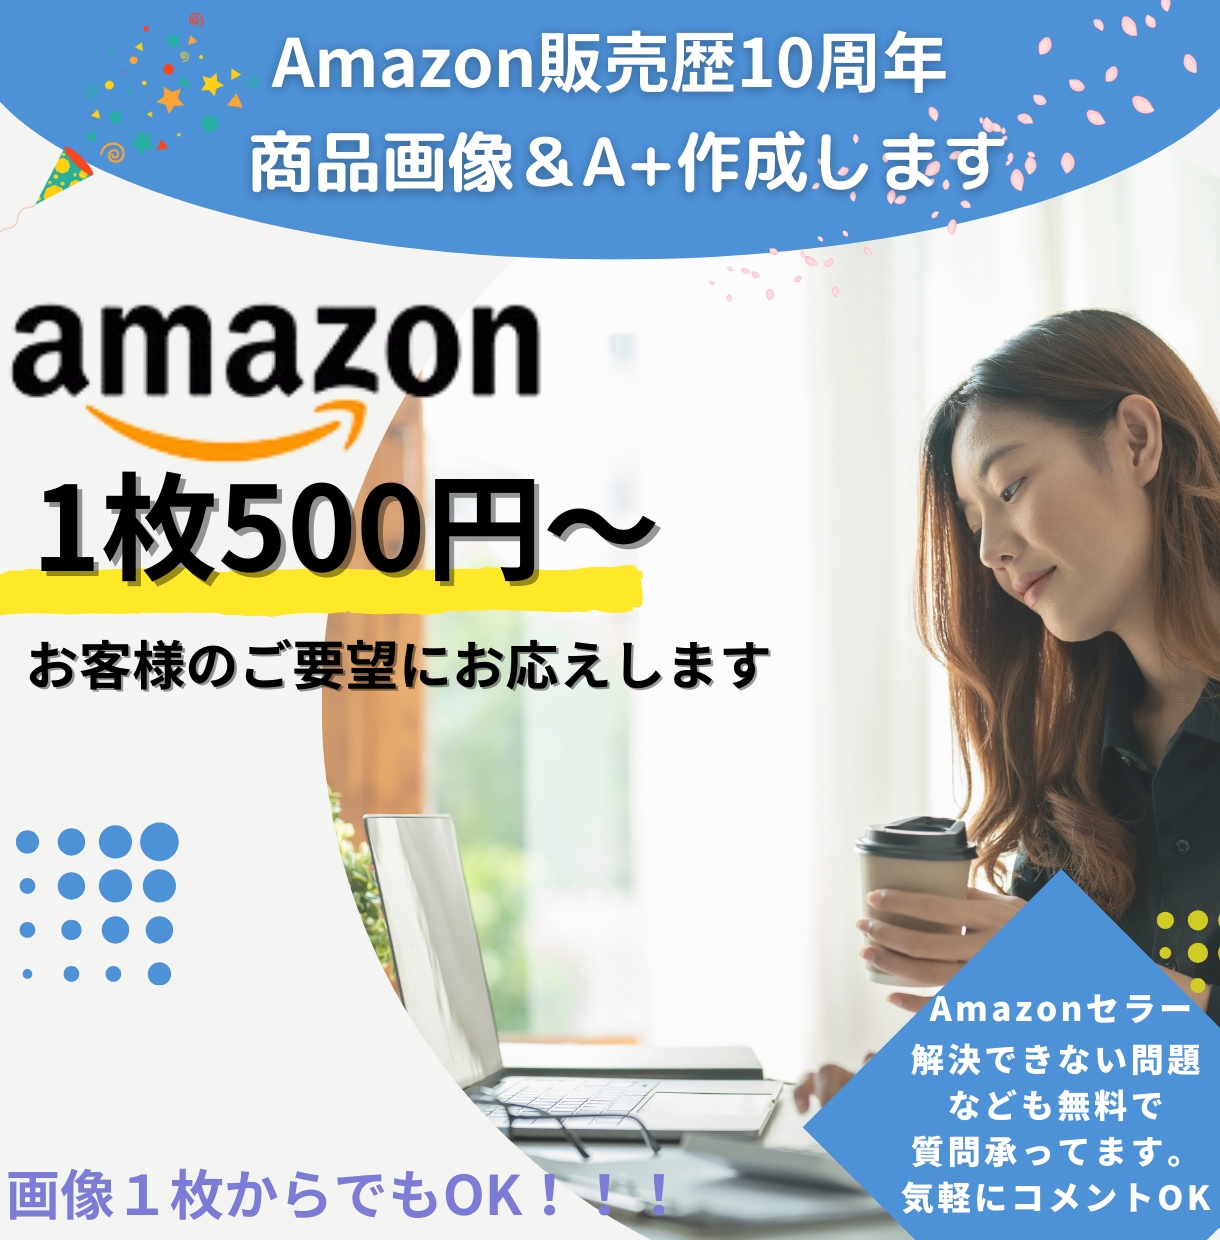 Amazon商品画像７枚＆コンテンツA+作成します 商品画像1枚500円から承ります！！！ イメージ1